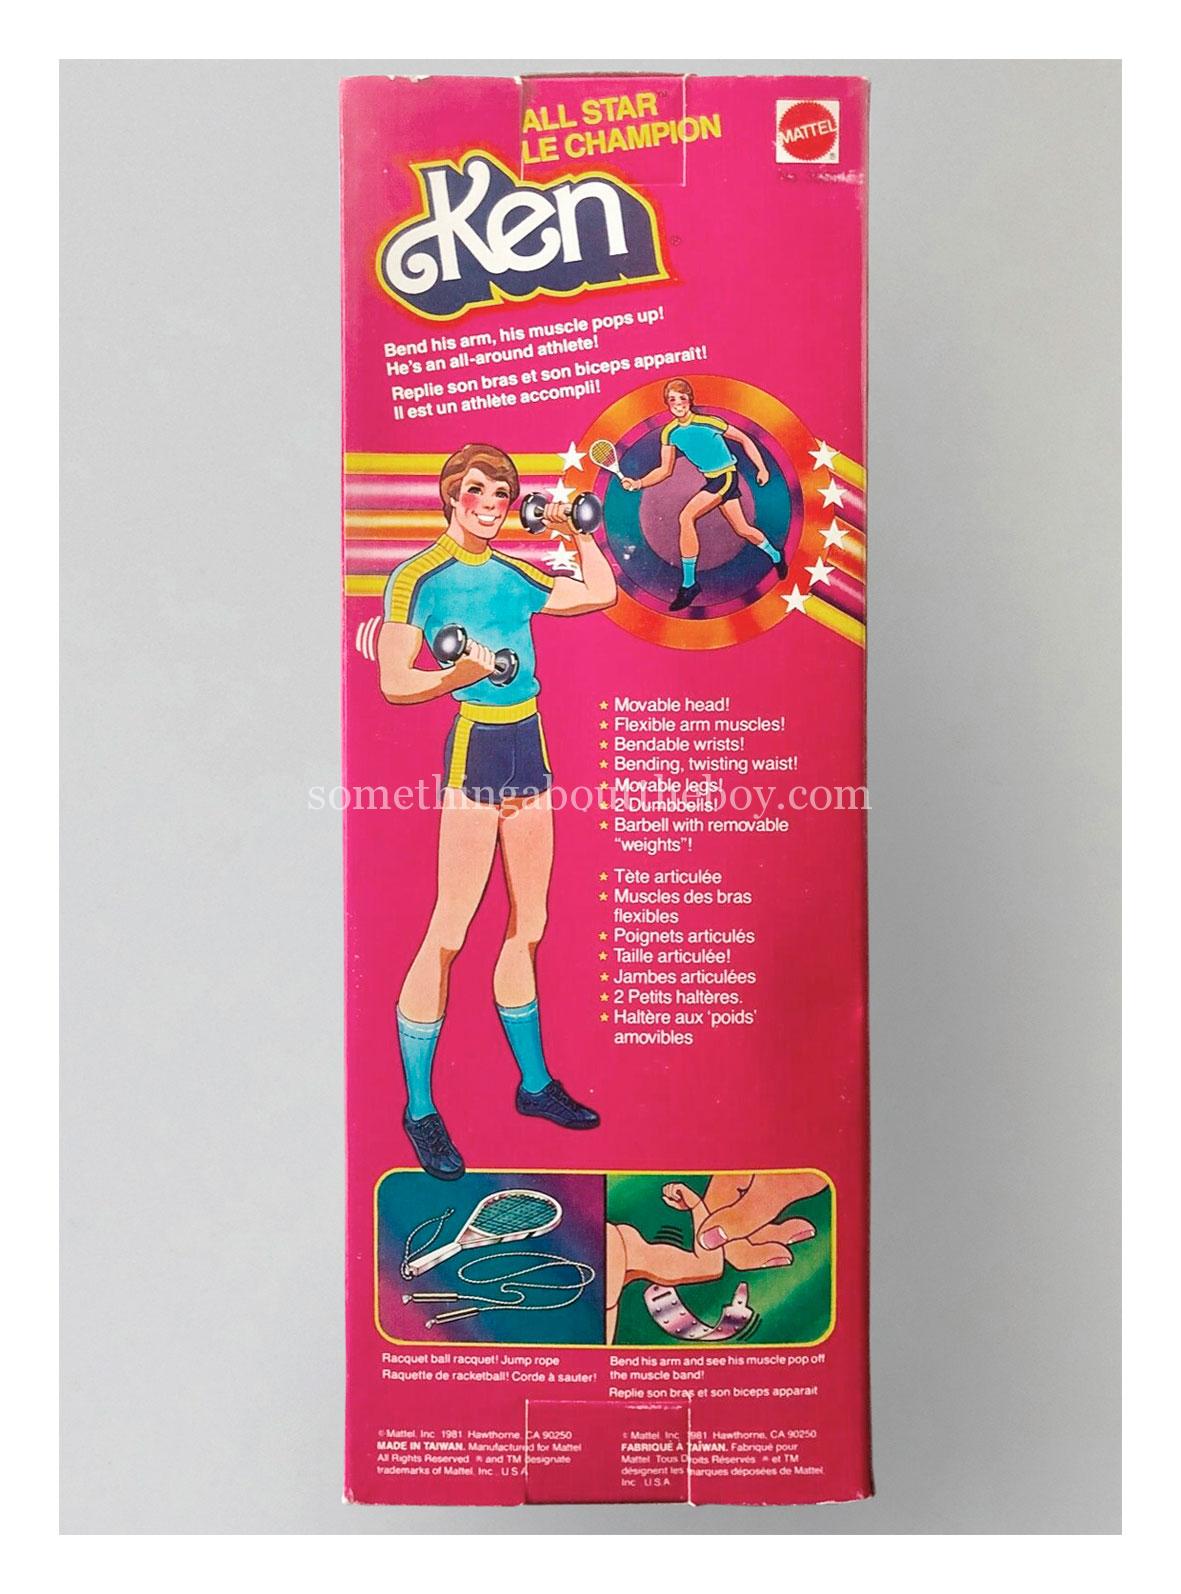 1982 #3553 All Star Ken (Canadian version) original packaging